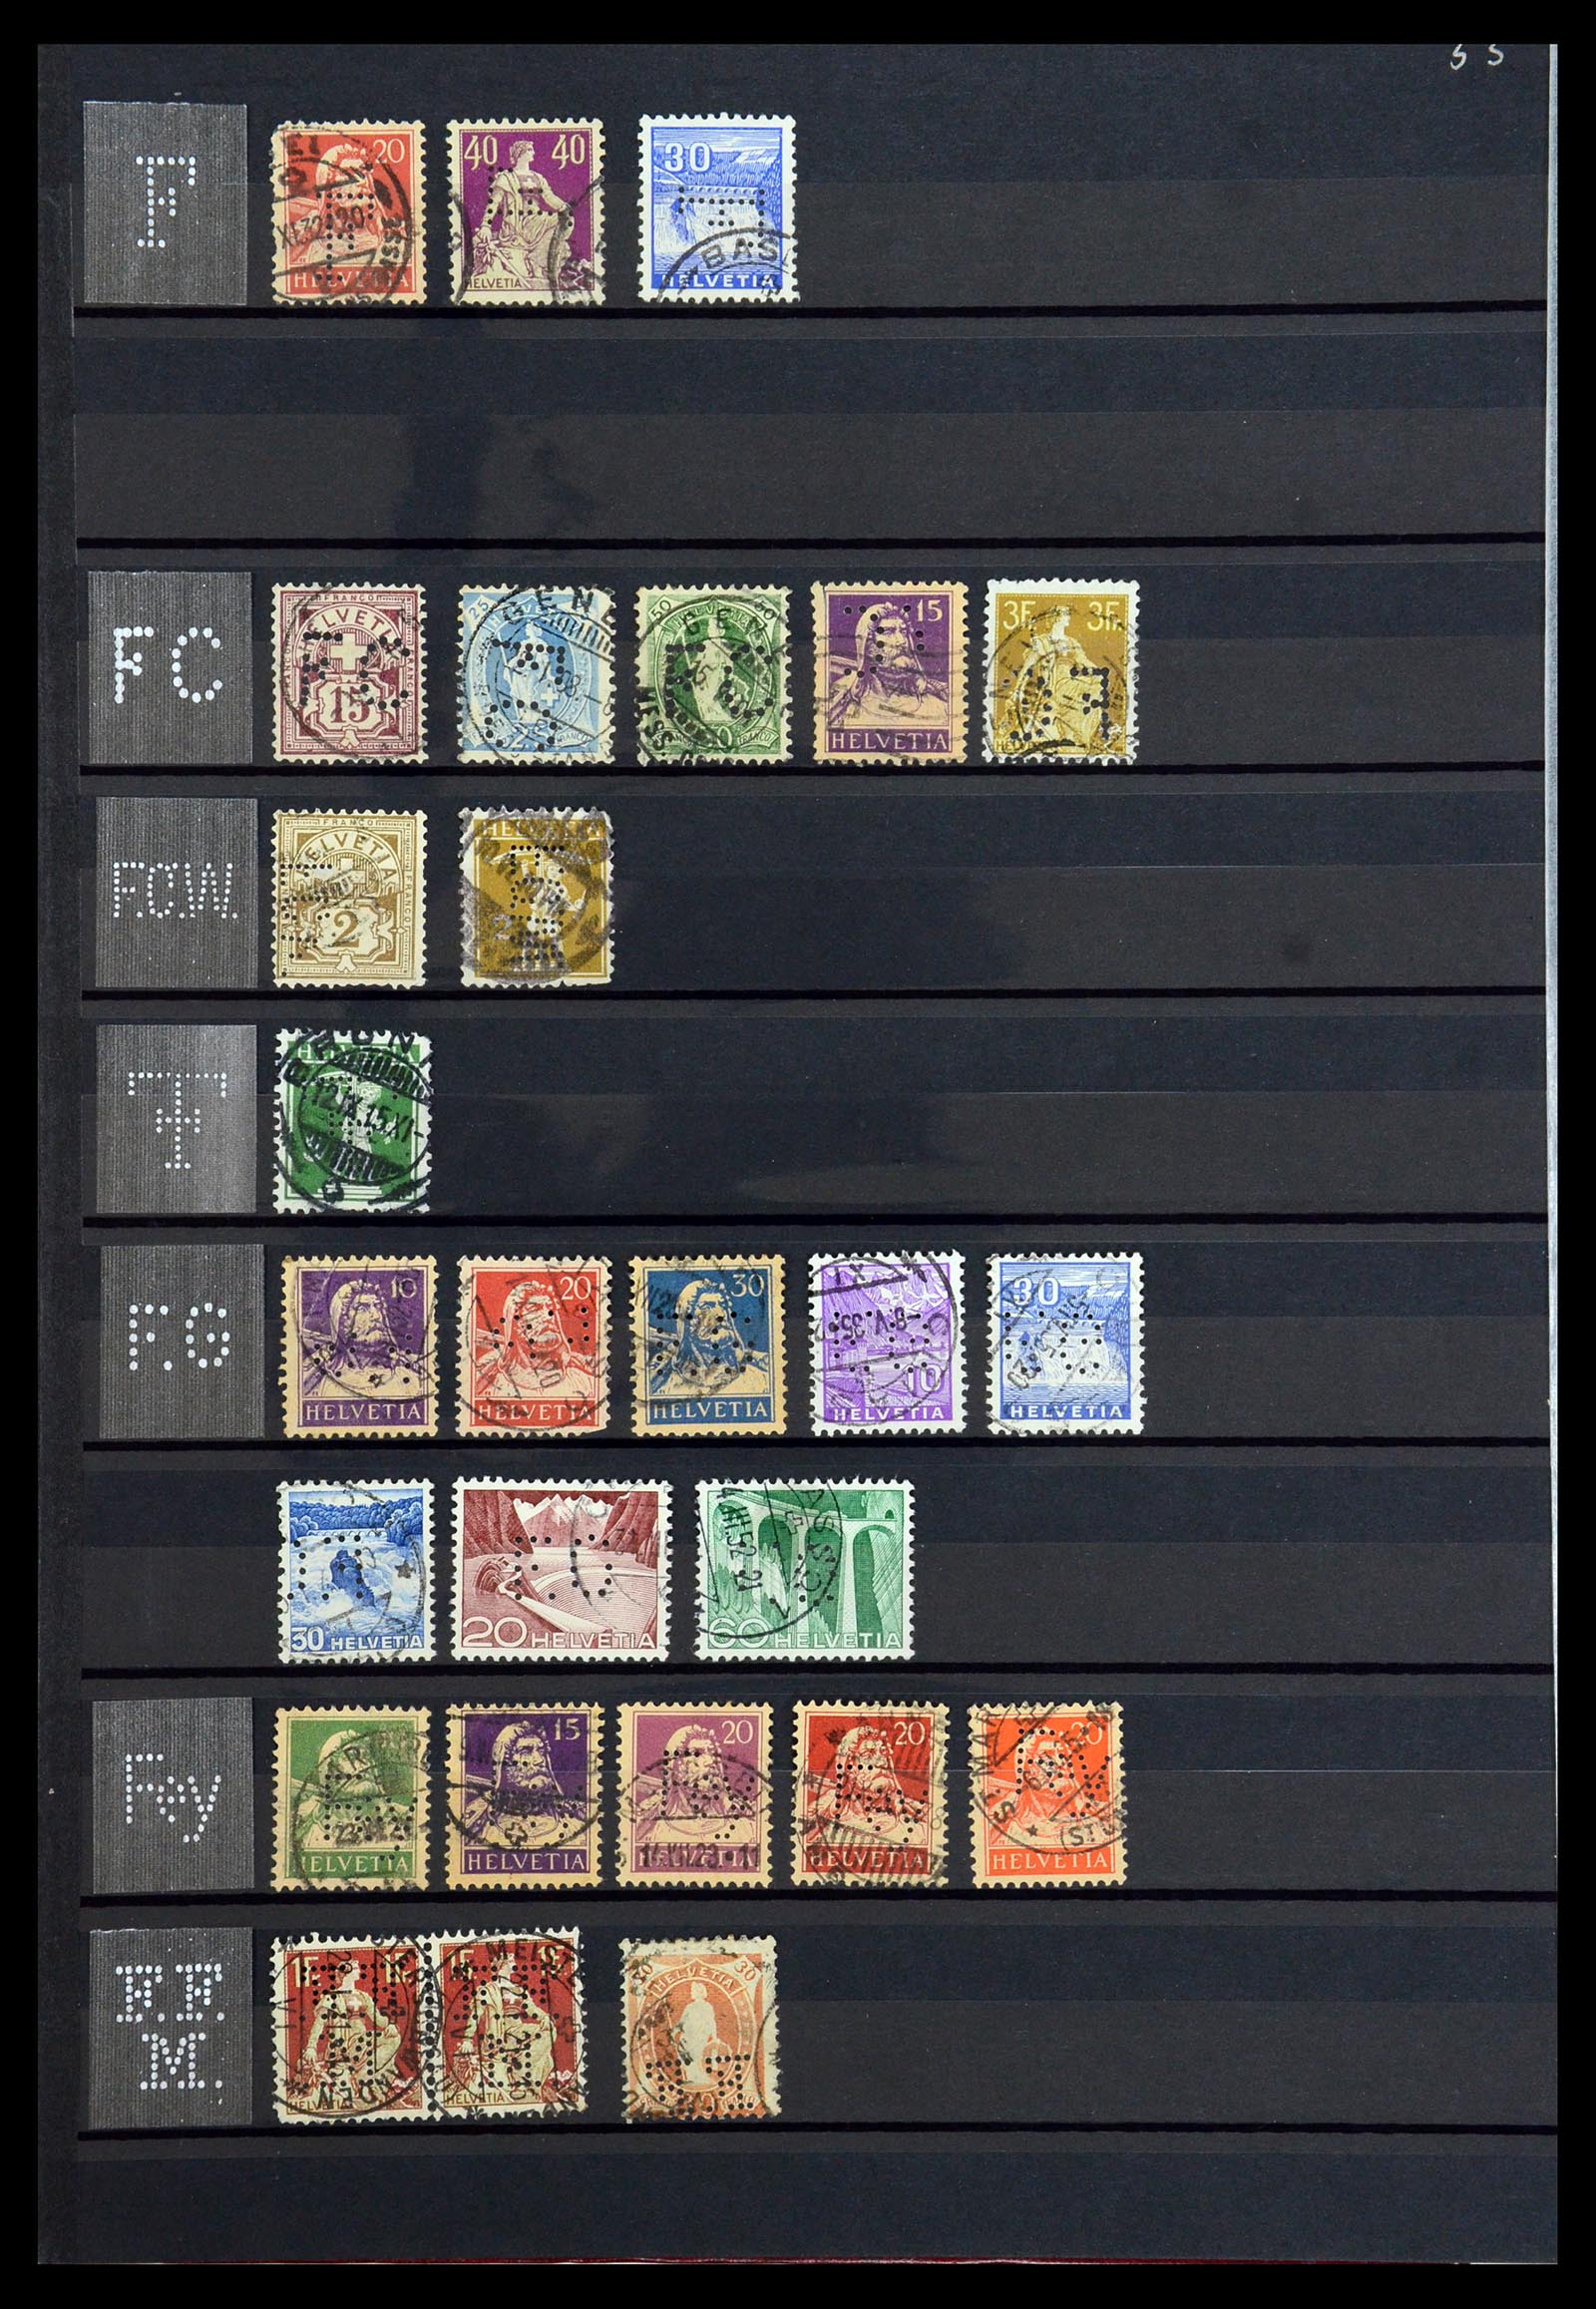 36372 018 - Stamp collection 36372 Switzerland perfins 1880-1960.